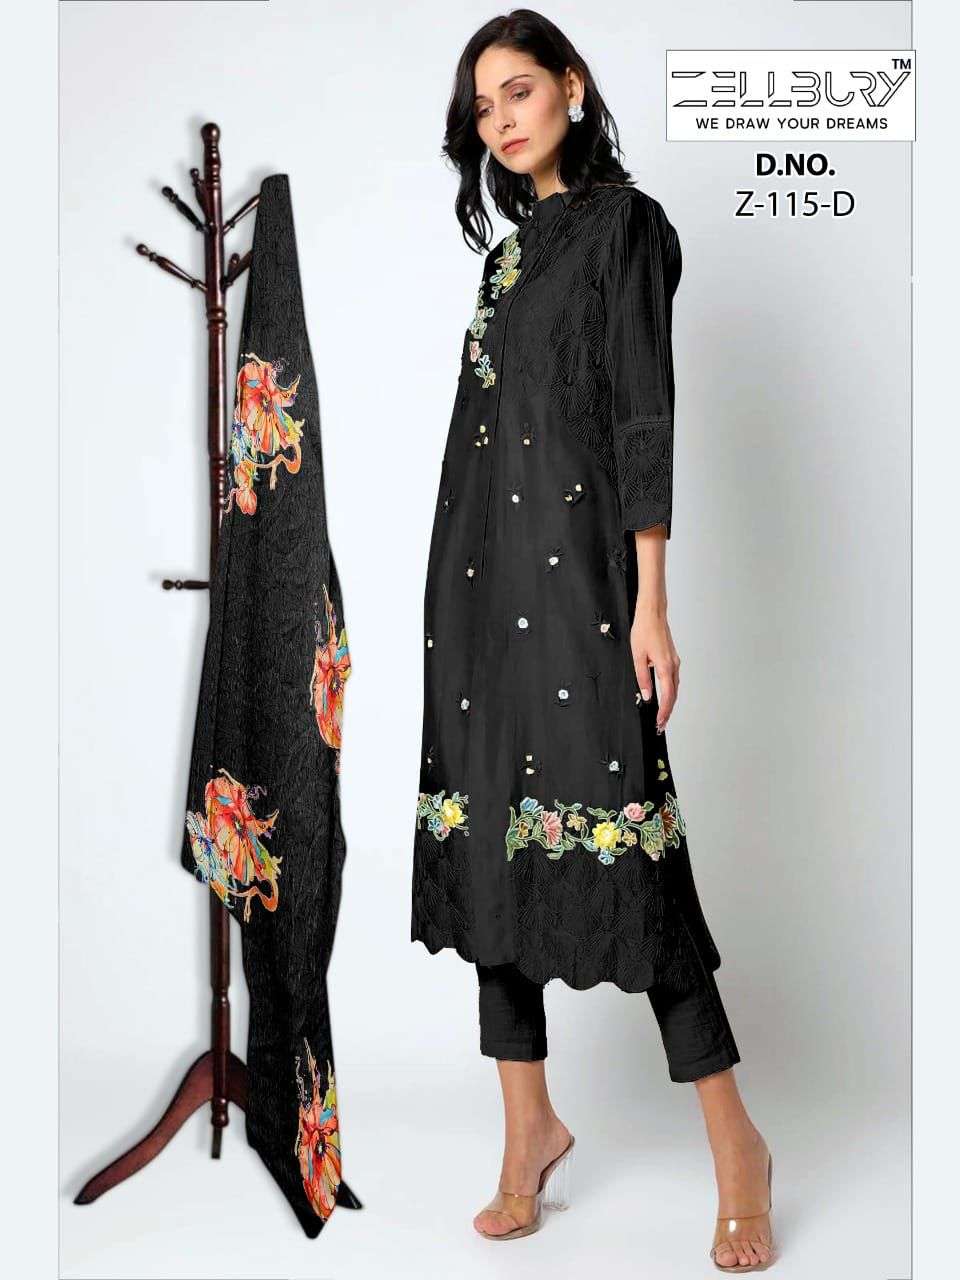 zellbury 115 series readymade designer salwar suits online supplier surat 